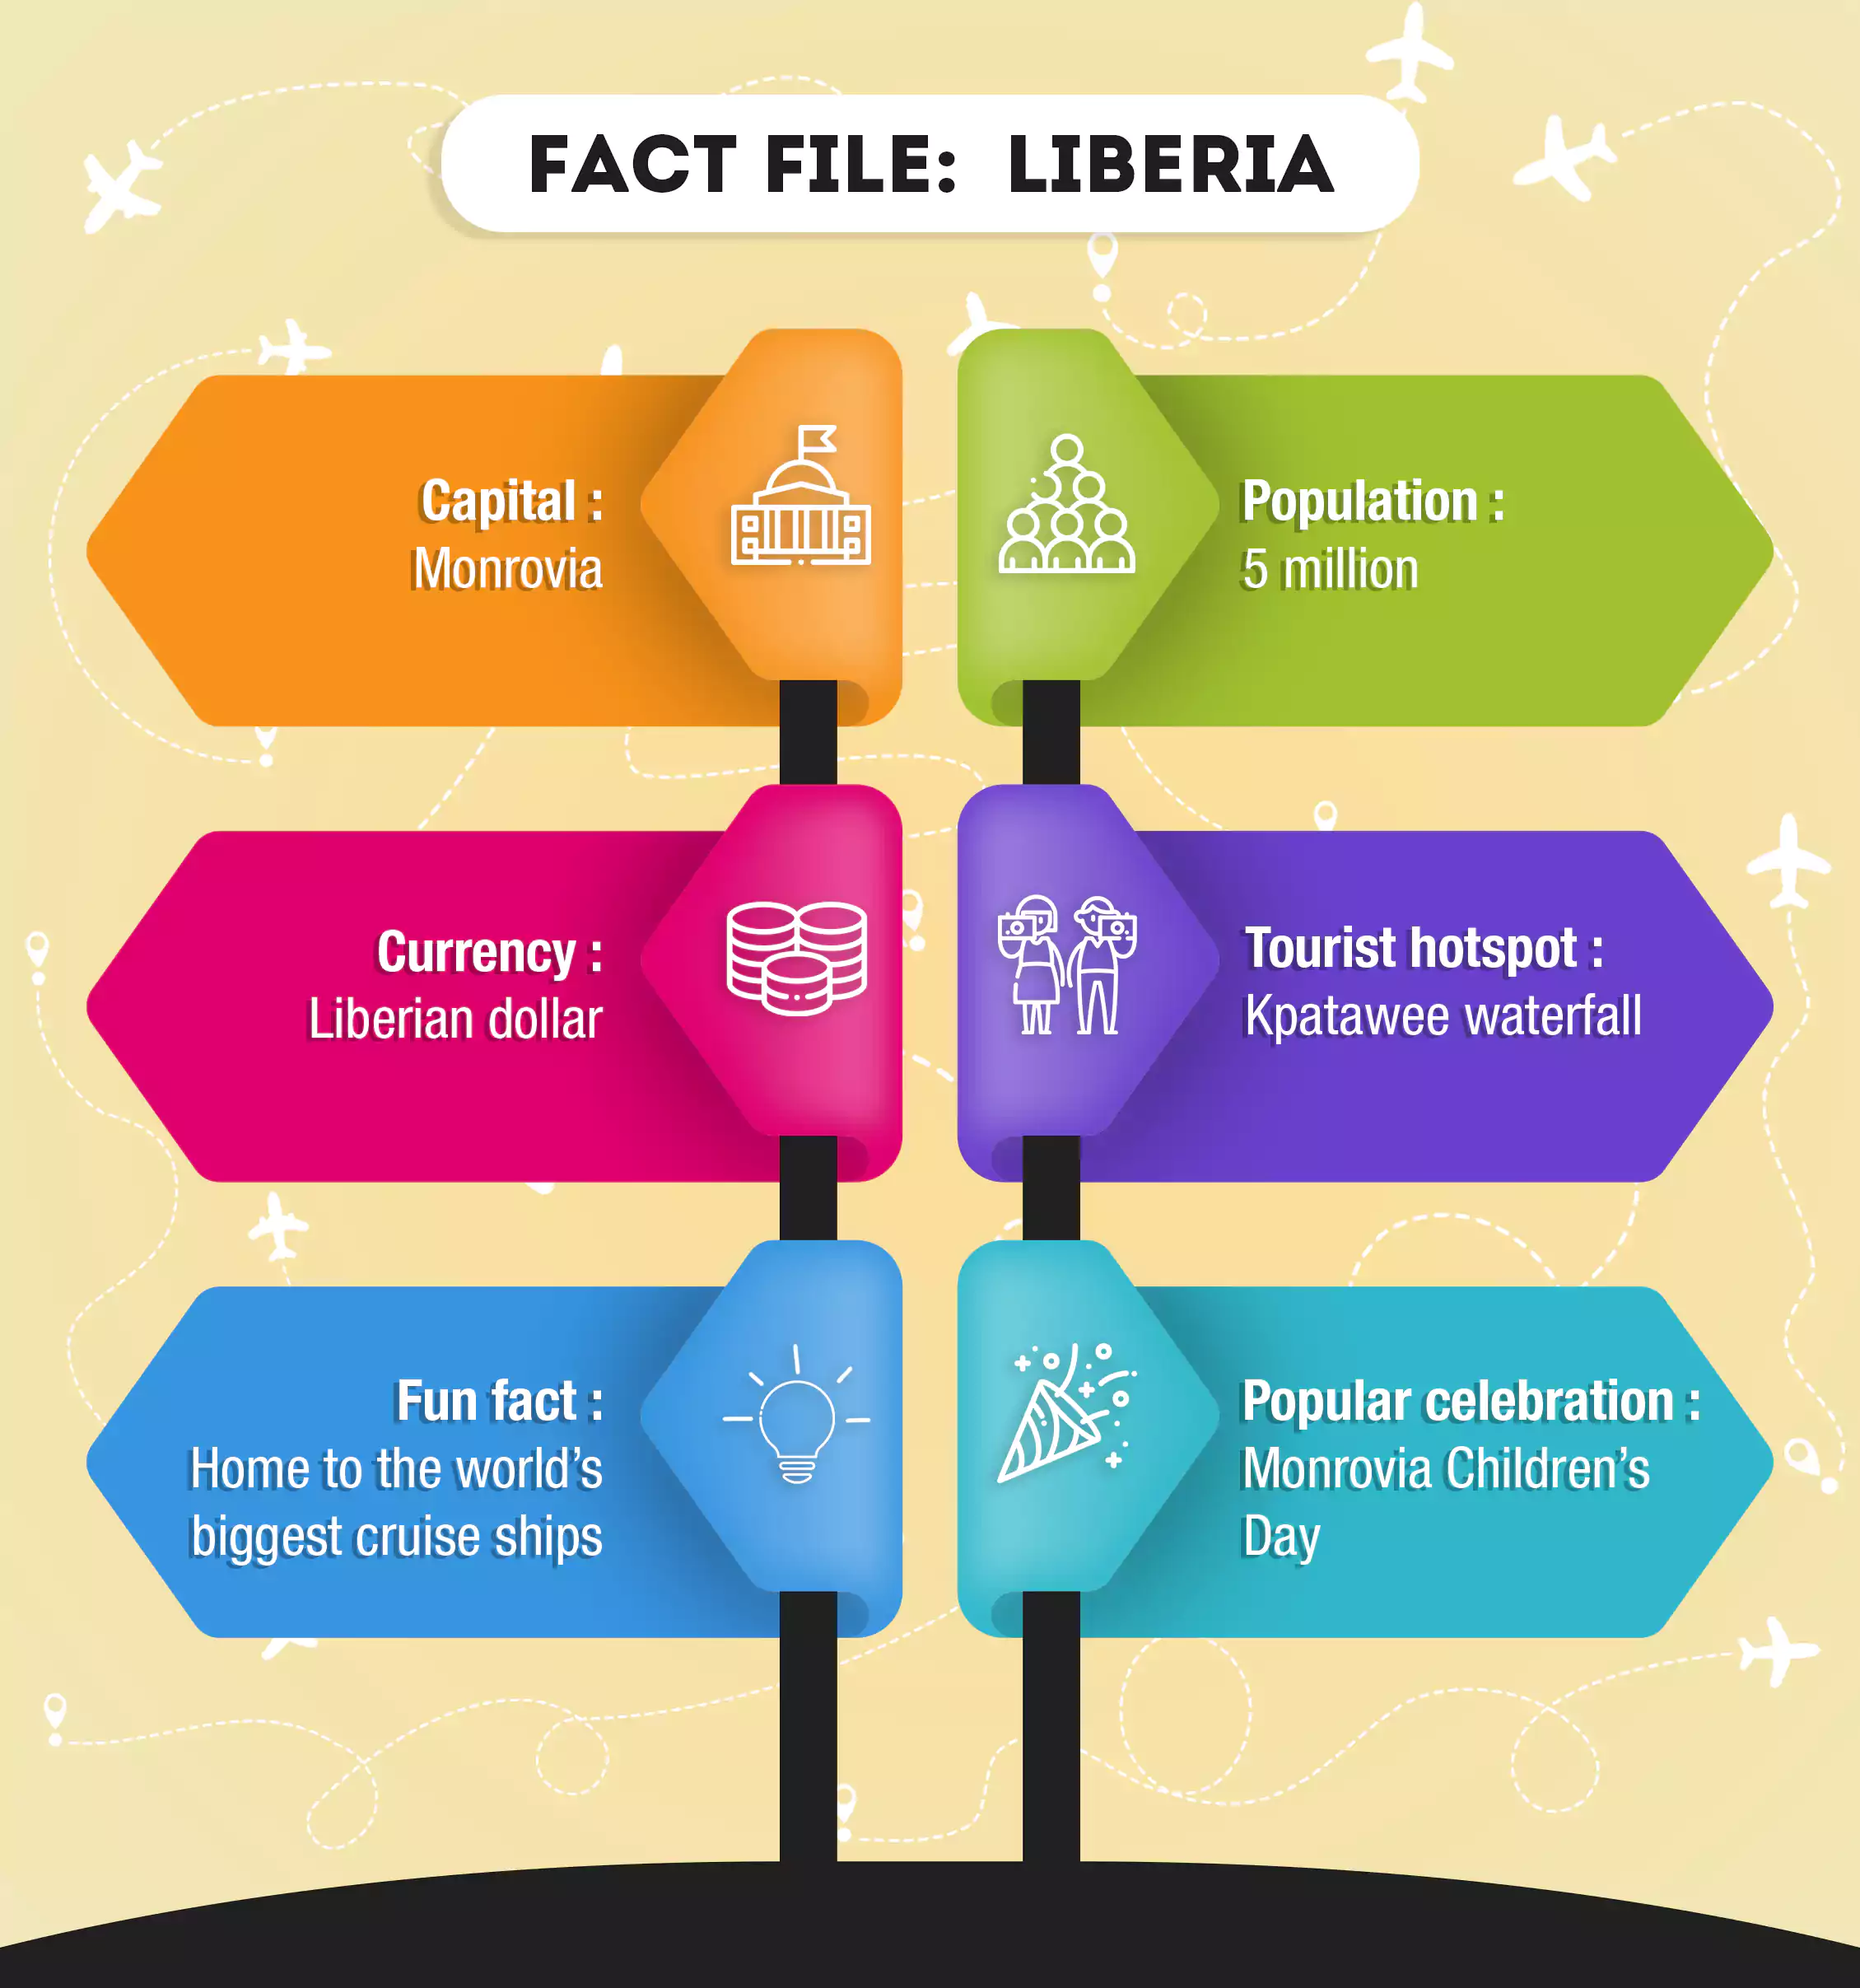 A fact file of Liberia